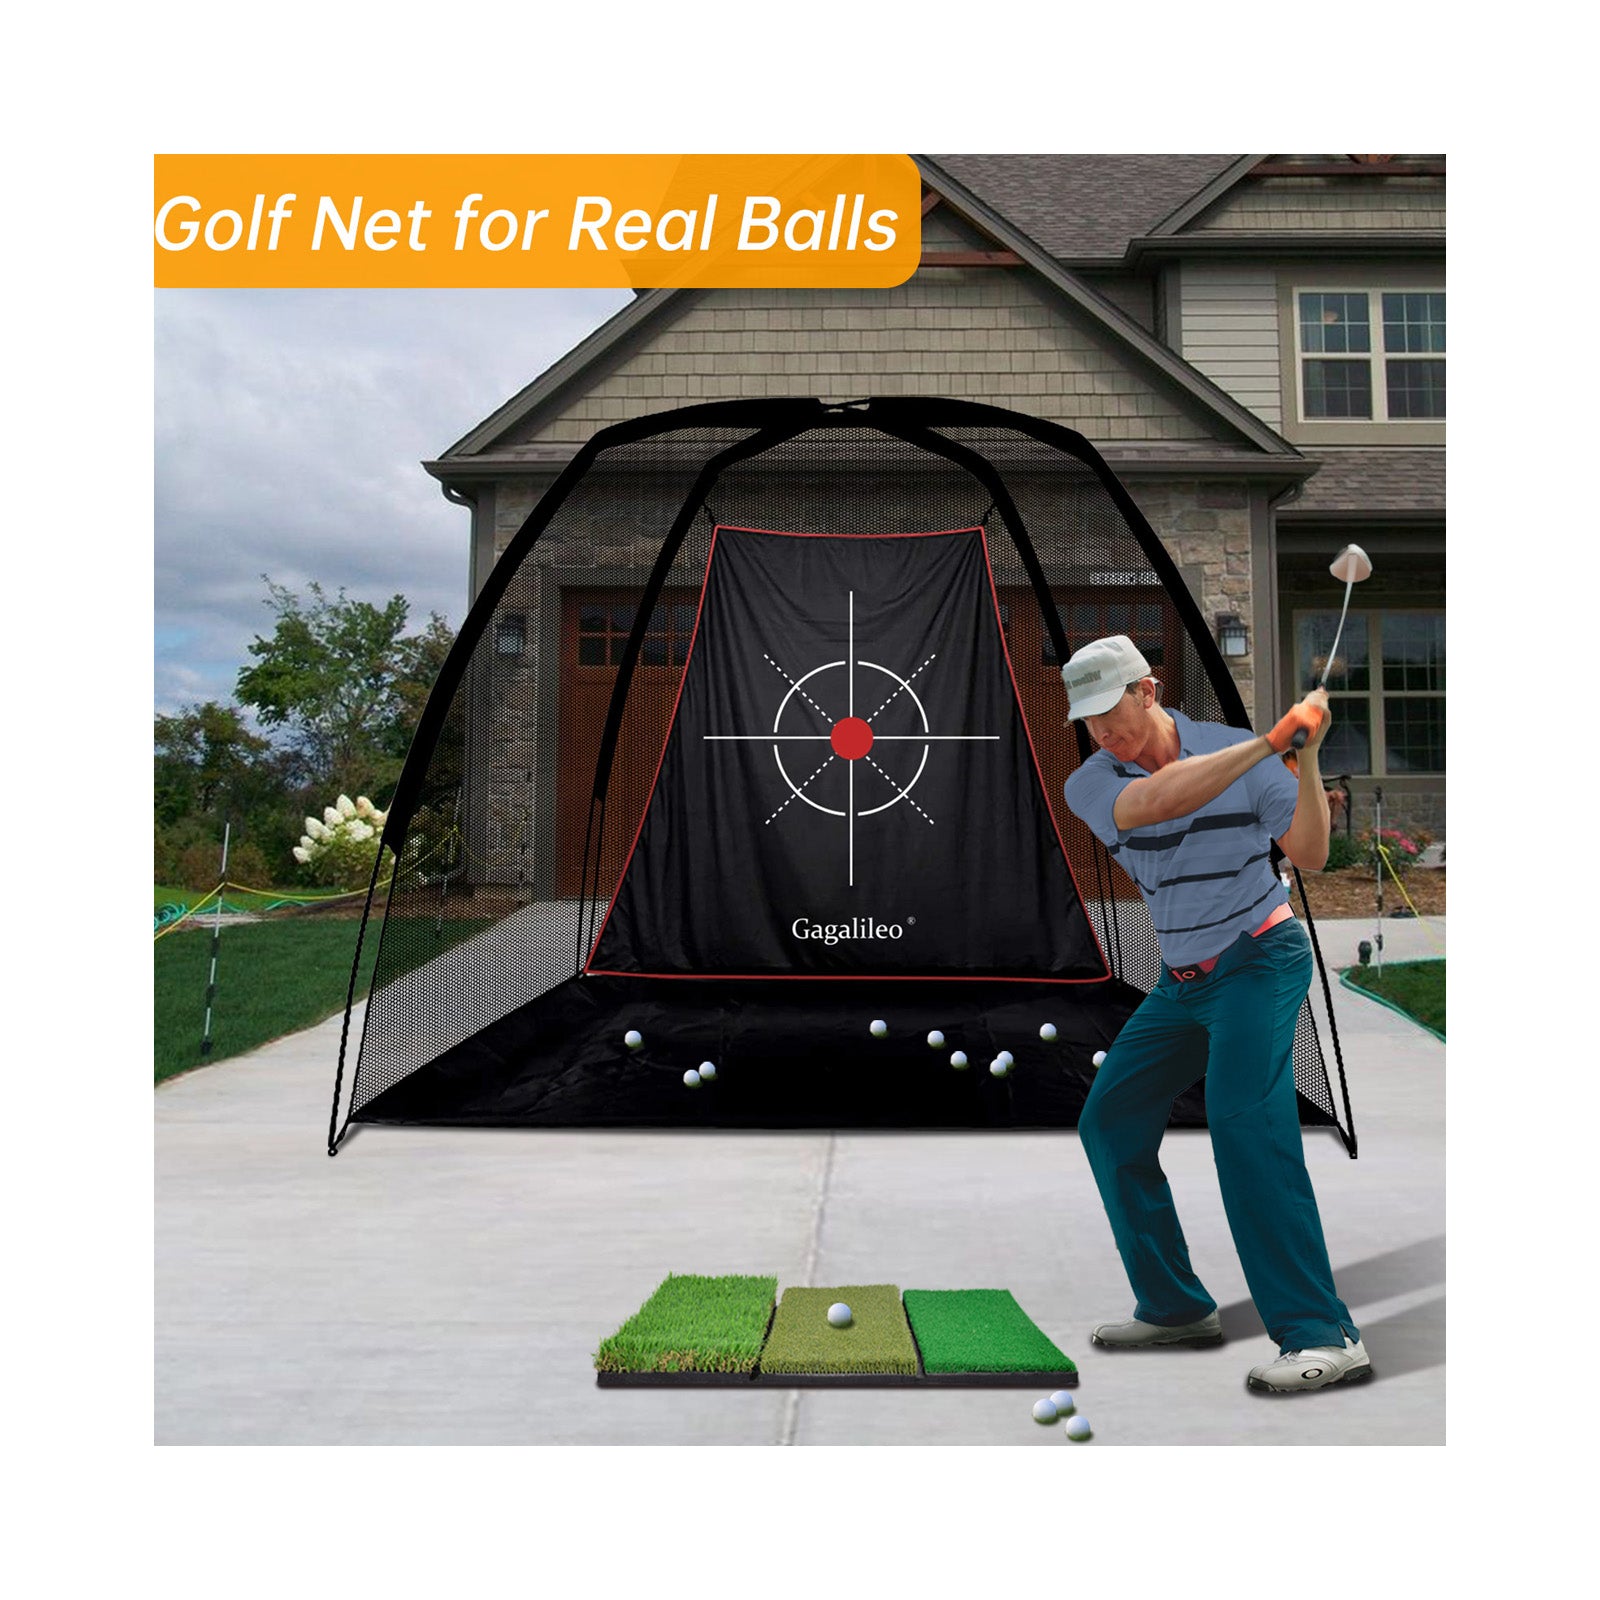 Red de golf Red de practica de golf Red de golf para patio trasero Redes de golf para uso en interiores | 8'X 6'X 5'| objetivo profesional | deportes galileo